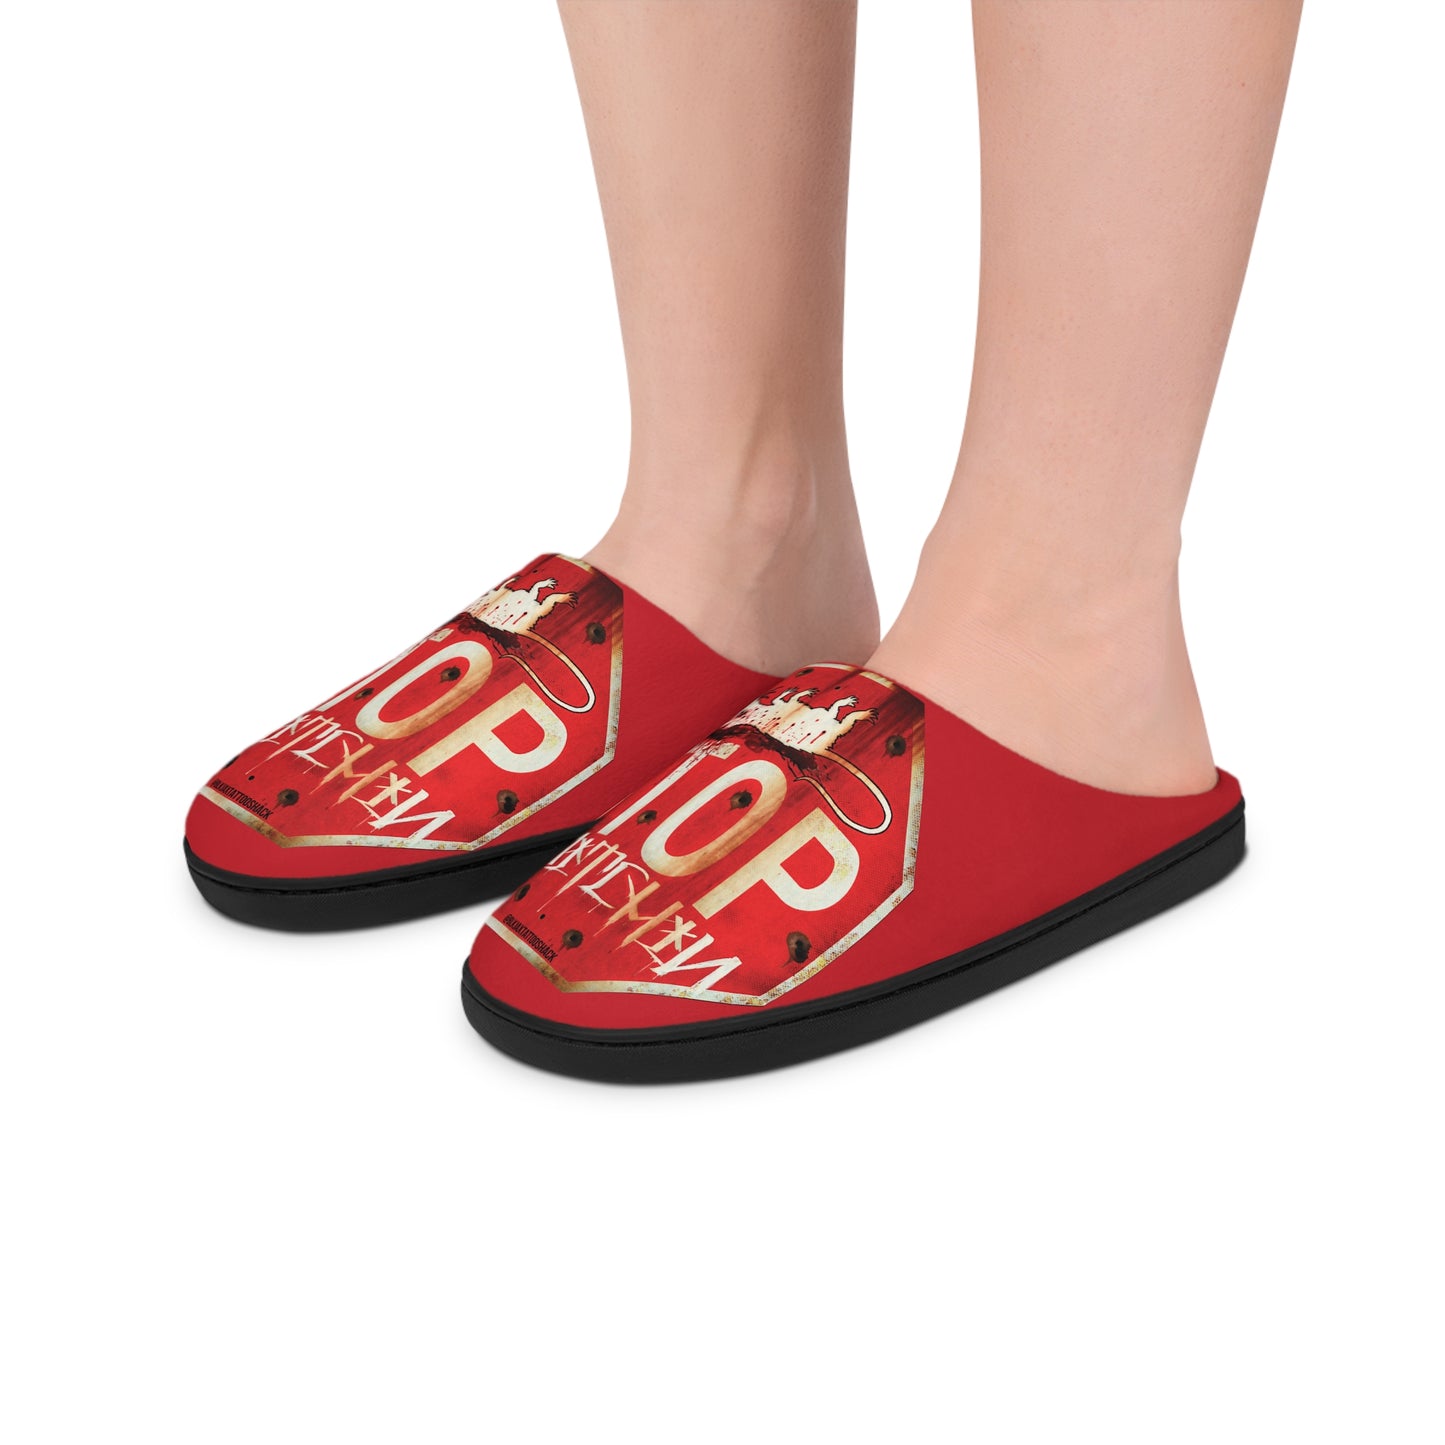 Men's Red Indoor Slippers